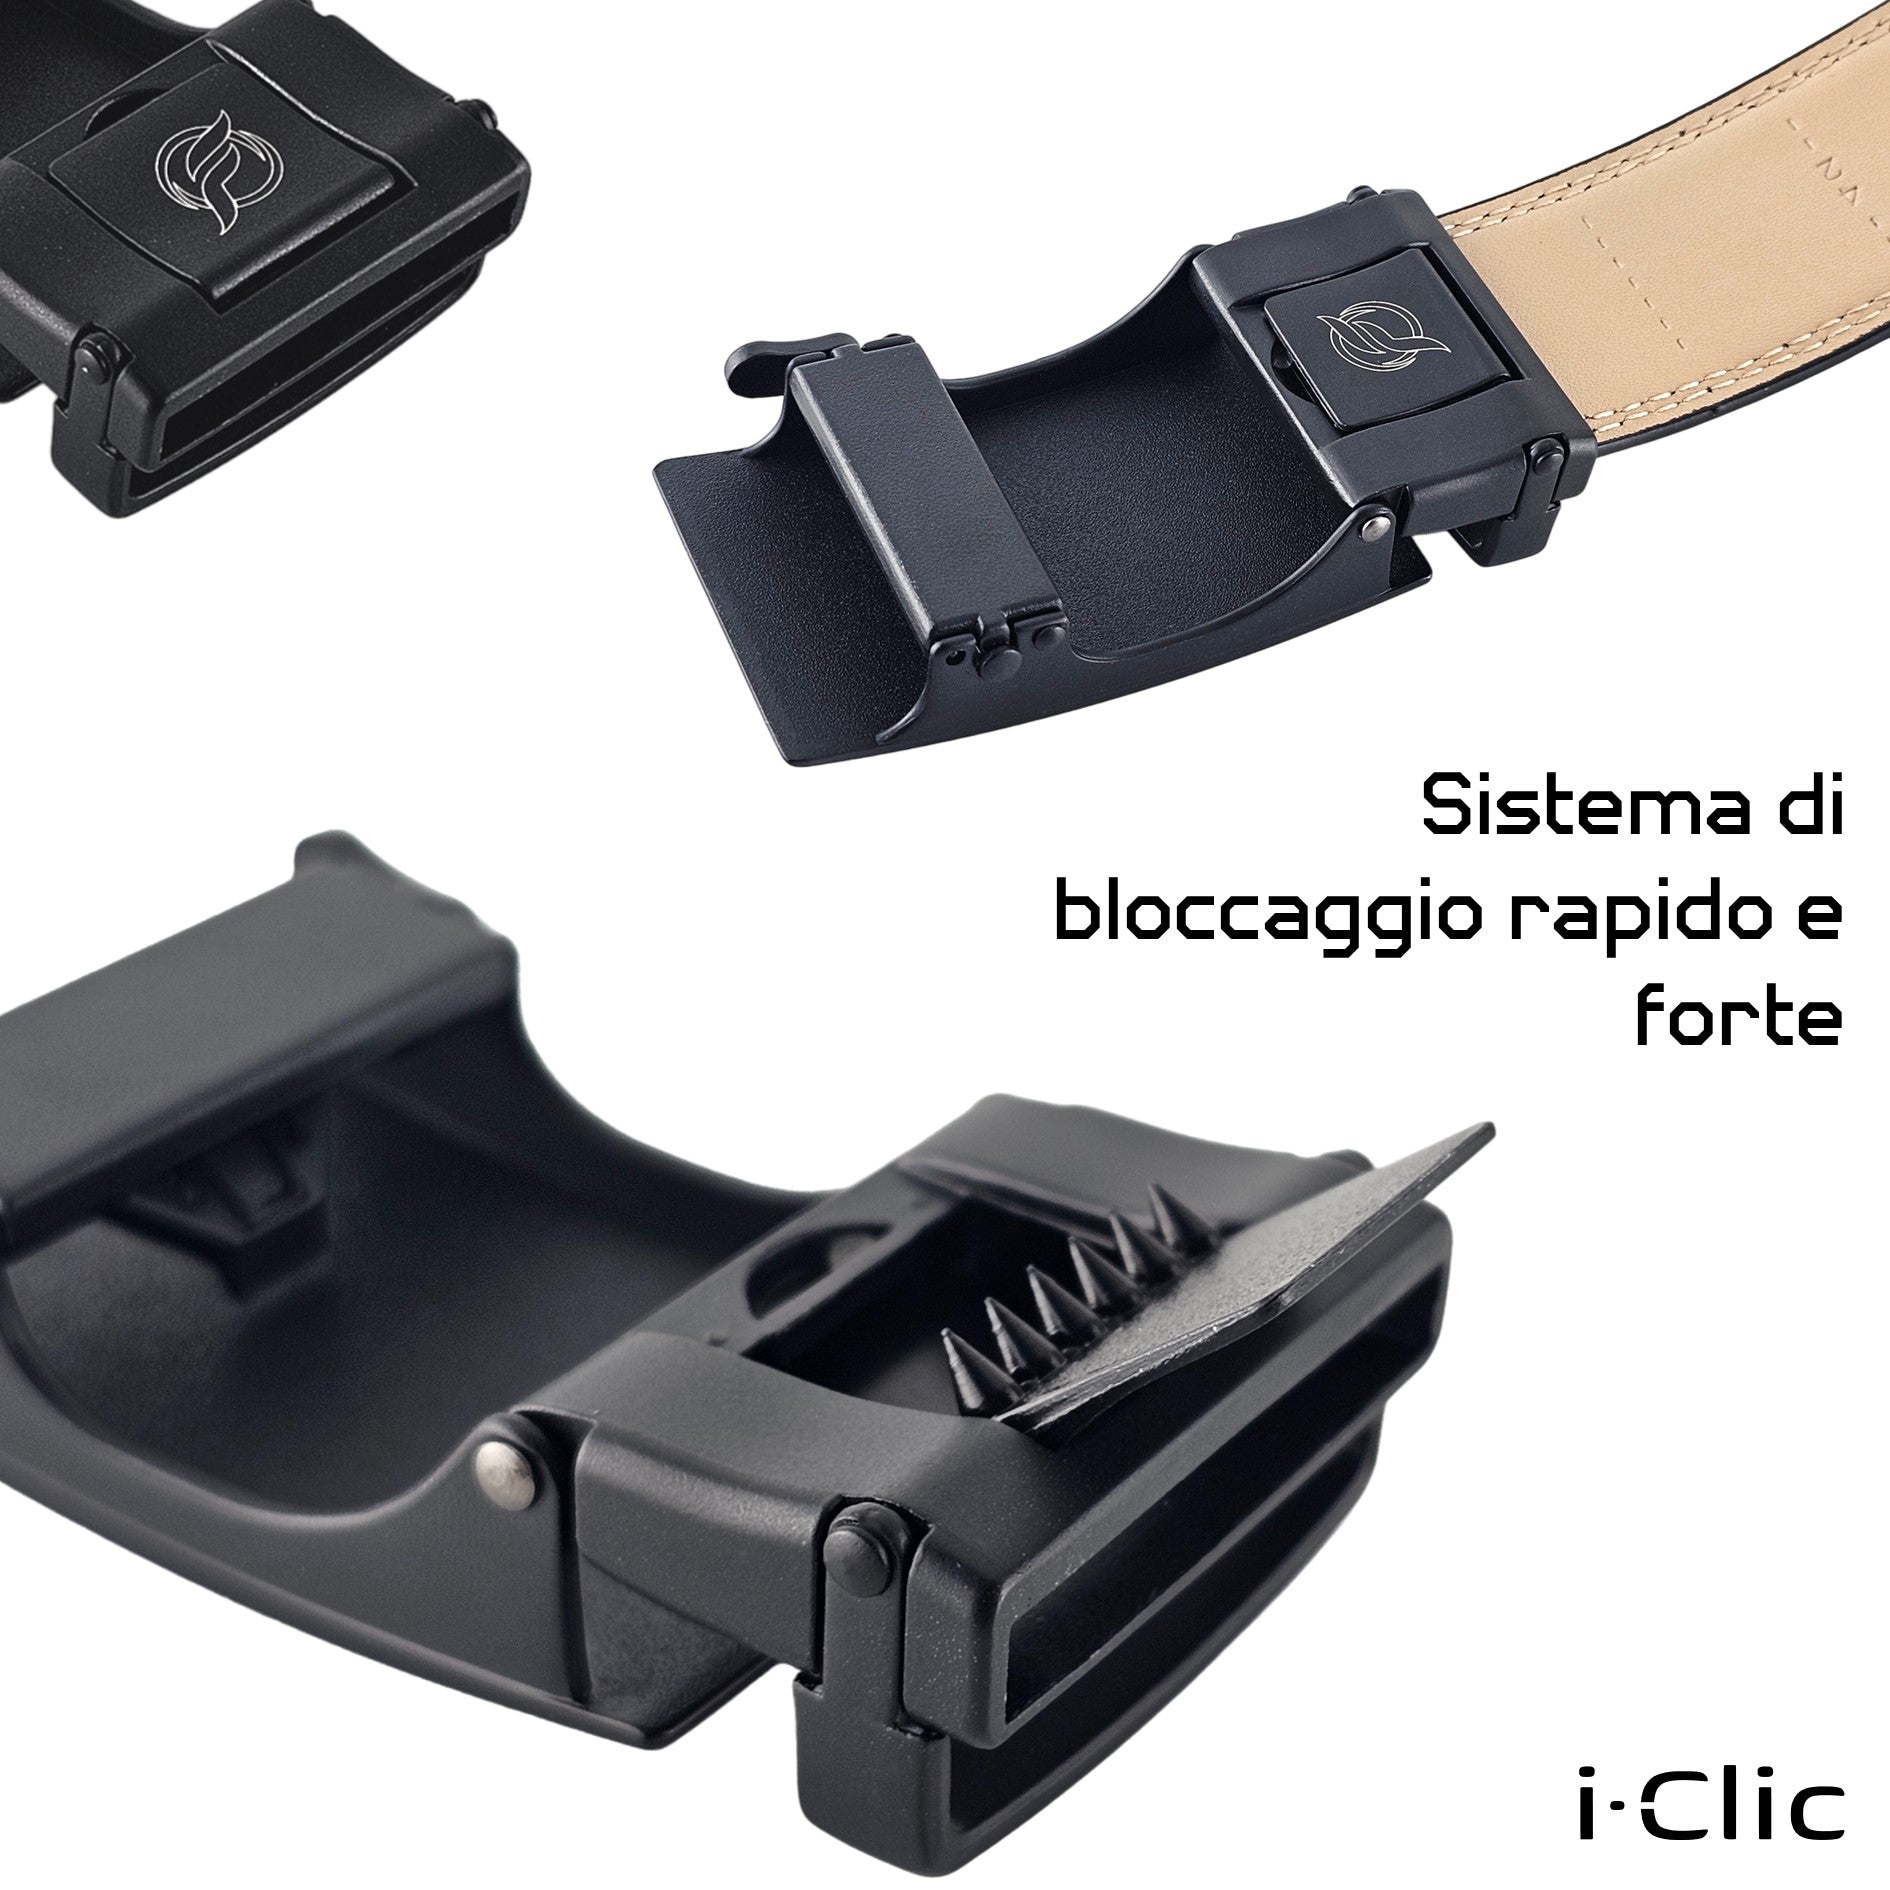 Cintura | i-Clic